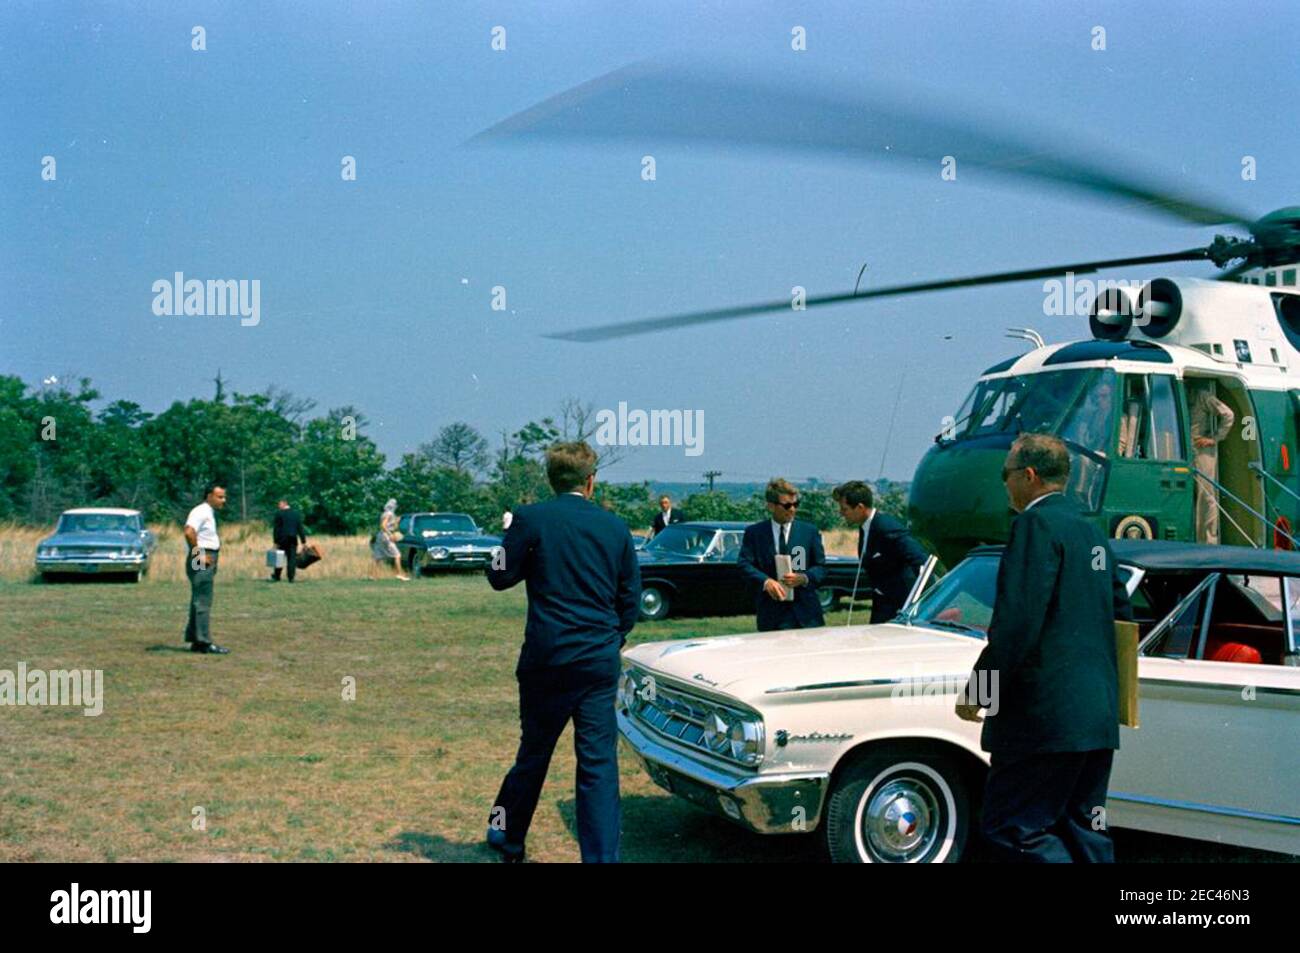 Voyage au port de Hyannis : président Kennedy avec Robert F. Kennedy (RFK) u0026 Edward M. Kennedy (EMK) à l'hôpital de la base aérienne d'Otis. Le président John F. Kennedy (au centre, à l'arrière), le procureur général Robert F. Kennedy (debout derrière la voiture, portant des lunettes de soleil) et le sénateur Edward M. Kennedy du Massachusetts (à droite du procureur général) arrivent à la base aérienne d'Otis; Le président Kennedy et ses frères se sont rendus à l'hôpital de la base aérienne d'Otis après le décès du nouveau-né Patrick Bouvier Kennedy, le président et la première dame Jacqueline Kennedyu2019s. Également représenté : agents de service secret, Banque D'Images